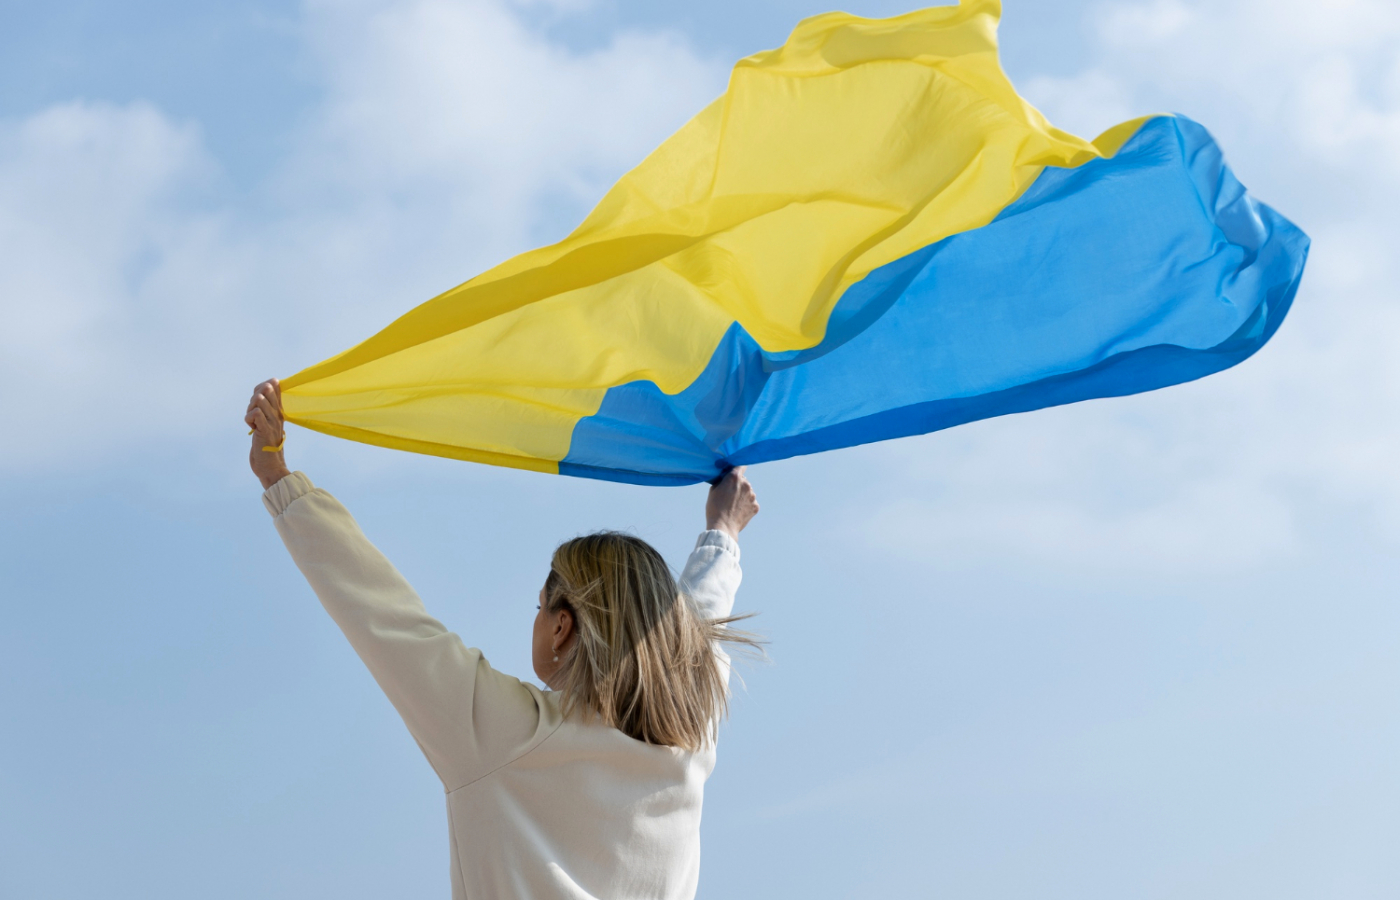 Od 05.03.2022 r. legalny pobyt i praca bez zezwolenia w całej Unii Europejskiej dla obywateli Ukrainy